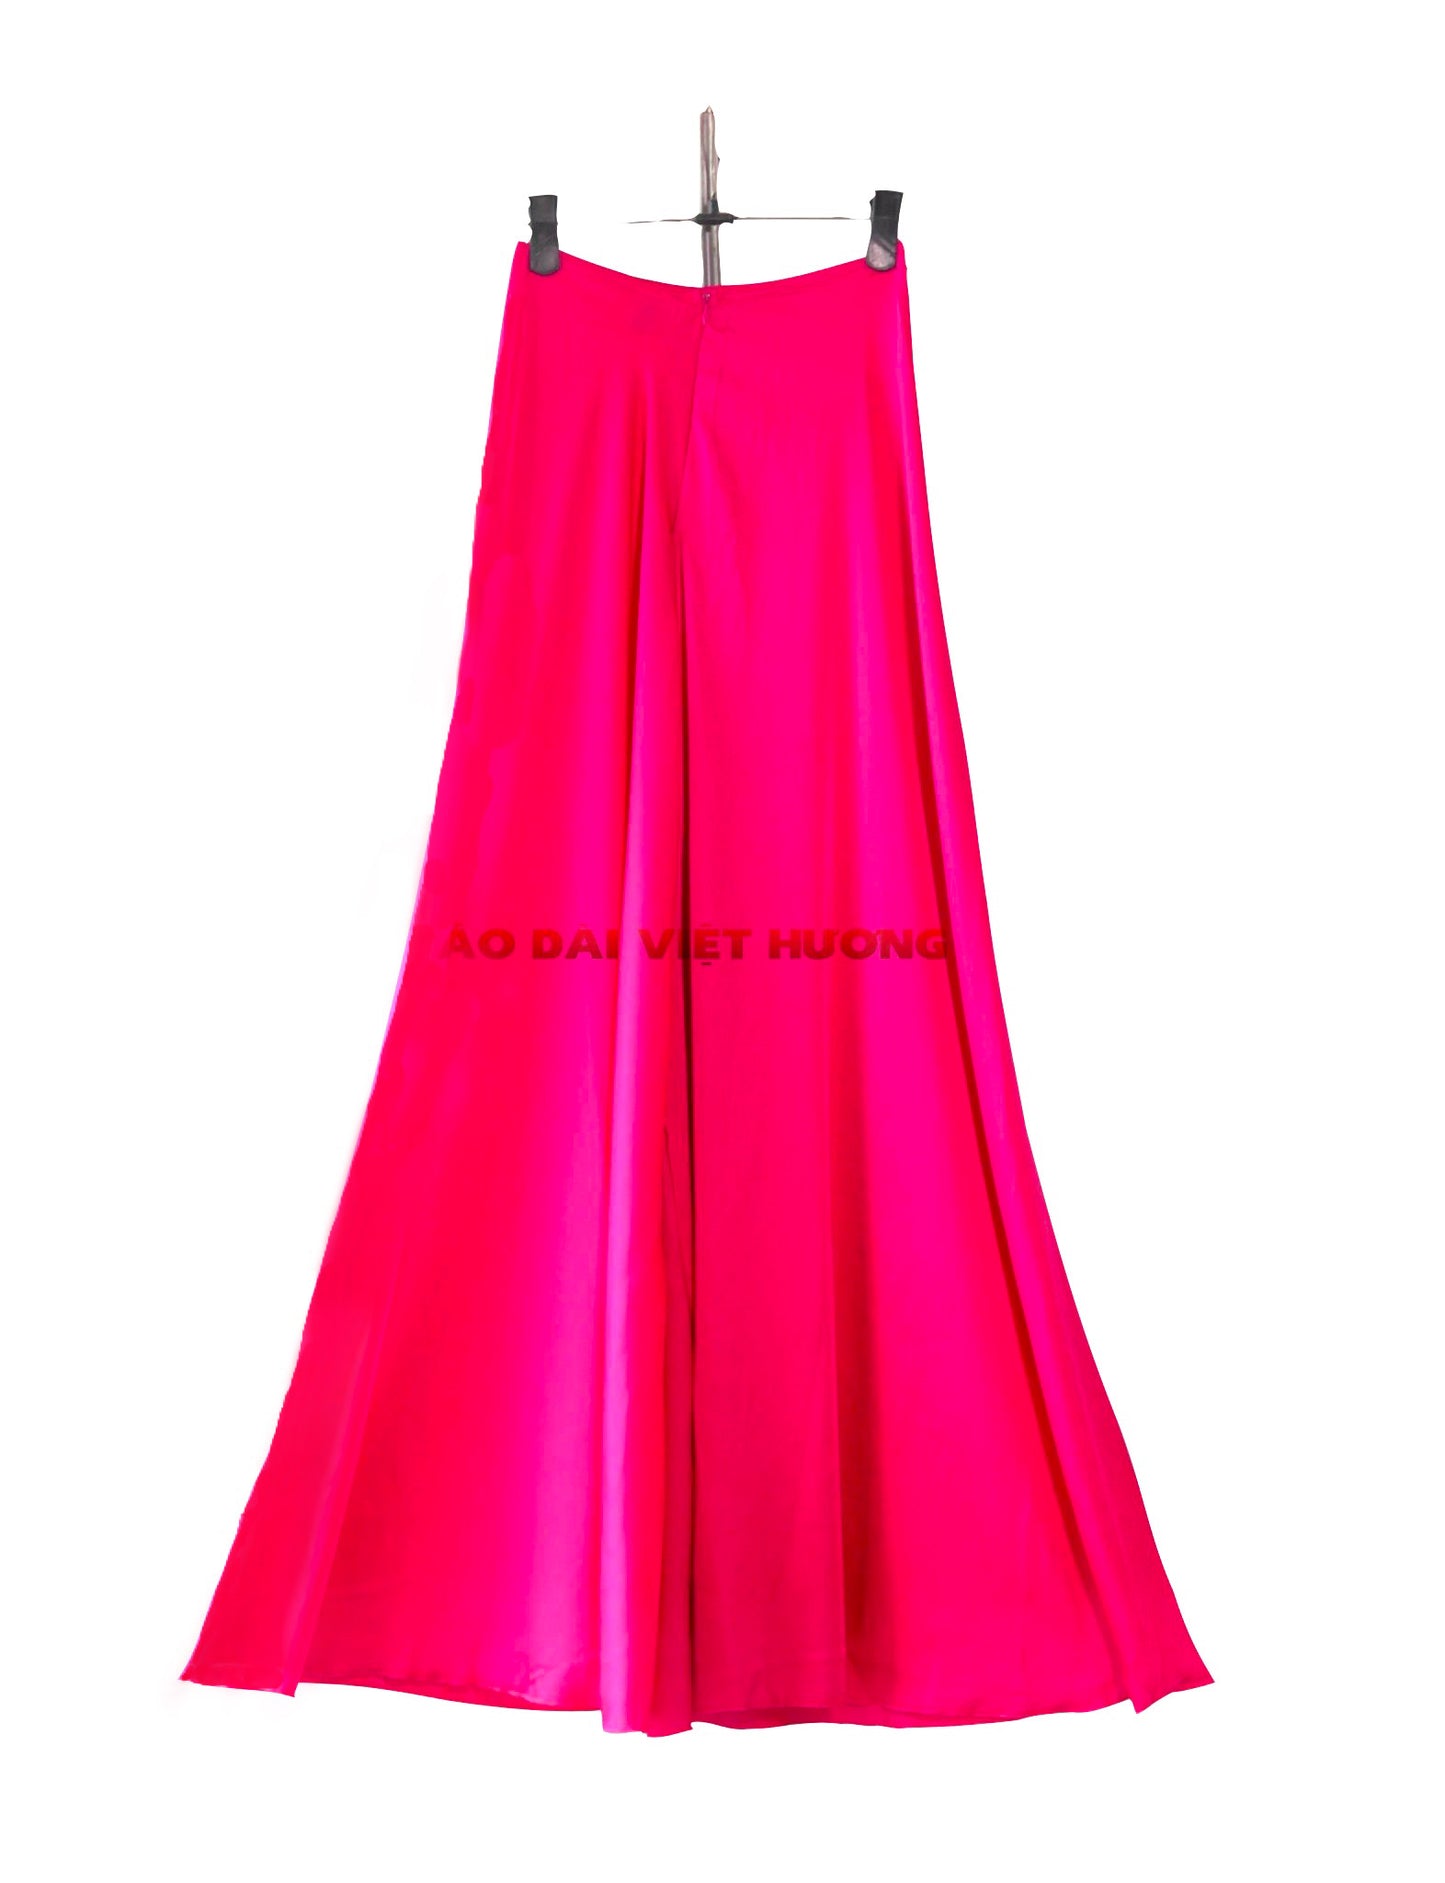 661 - Quần Váy Hồng Sen (Quần Váy Lụa Cát Ống Xéo)